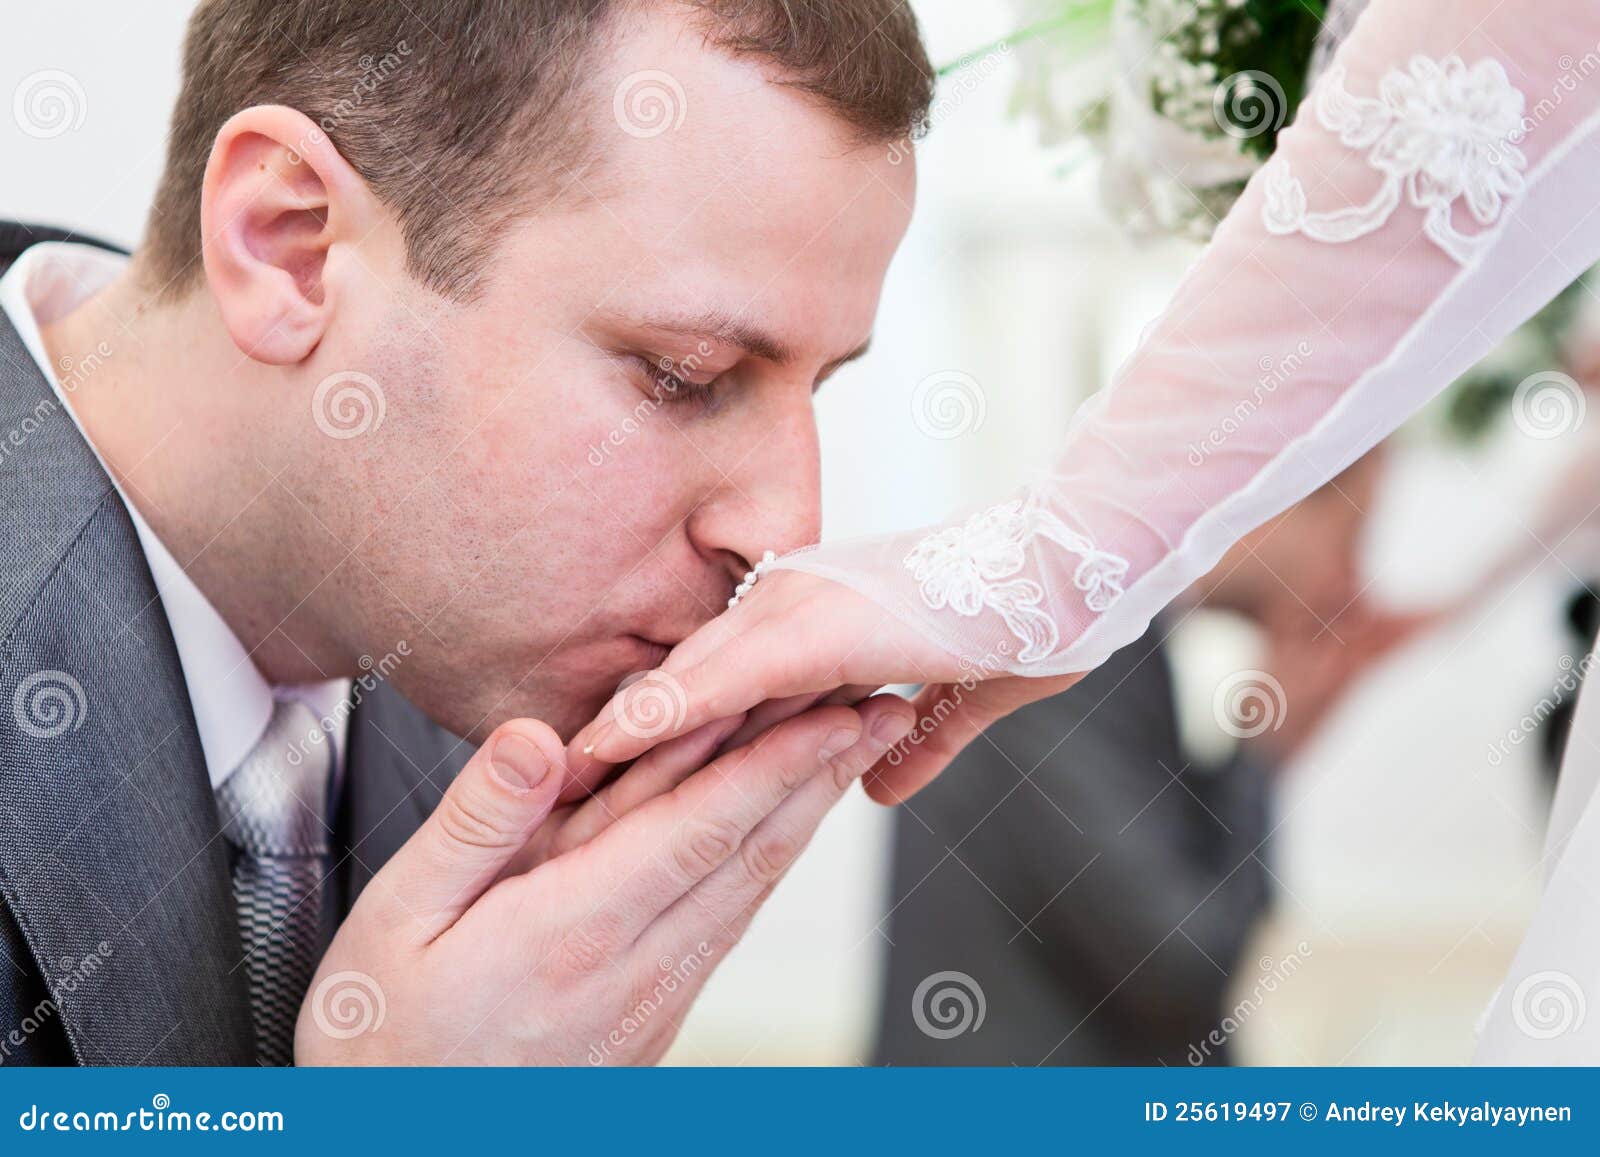 Жених с браком аудиокнига. Жених целует руку невесте. Поцелуй руки. Целовать руки невесте. Мужчина целует руку невесты.